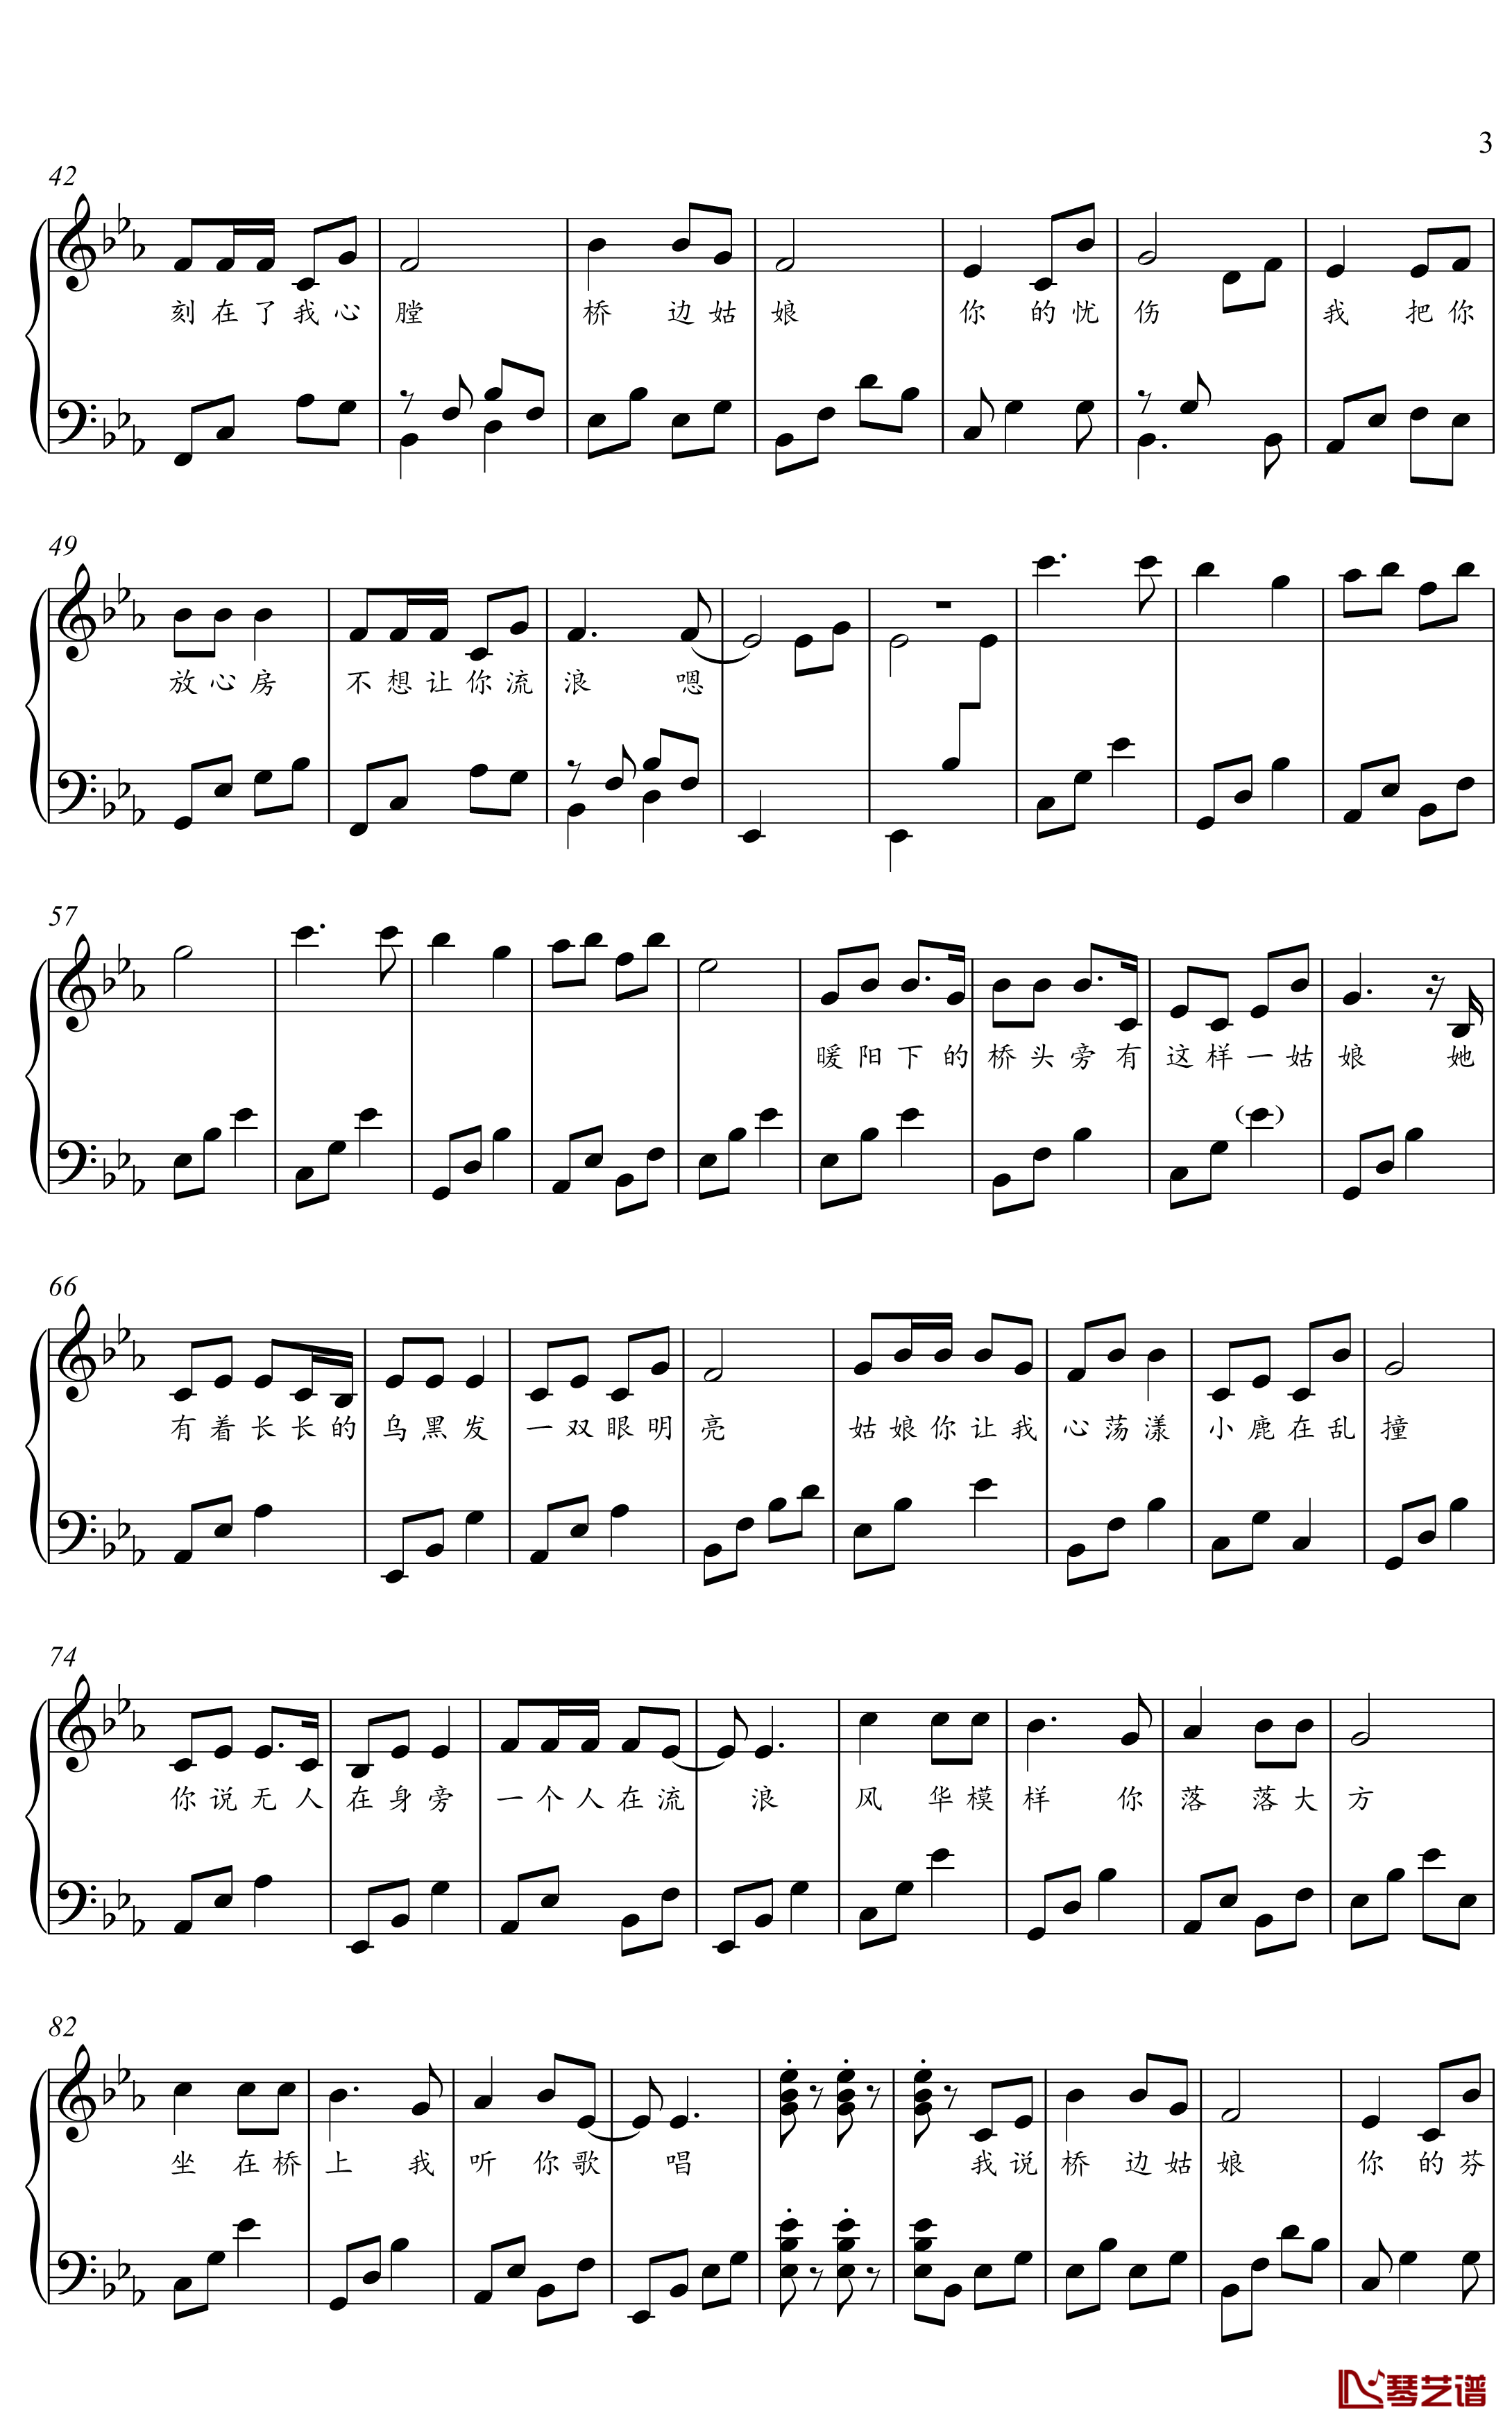 桥边姑娘钢琴谱 简化独奏谱2001033